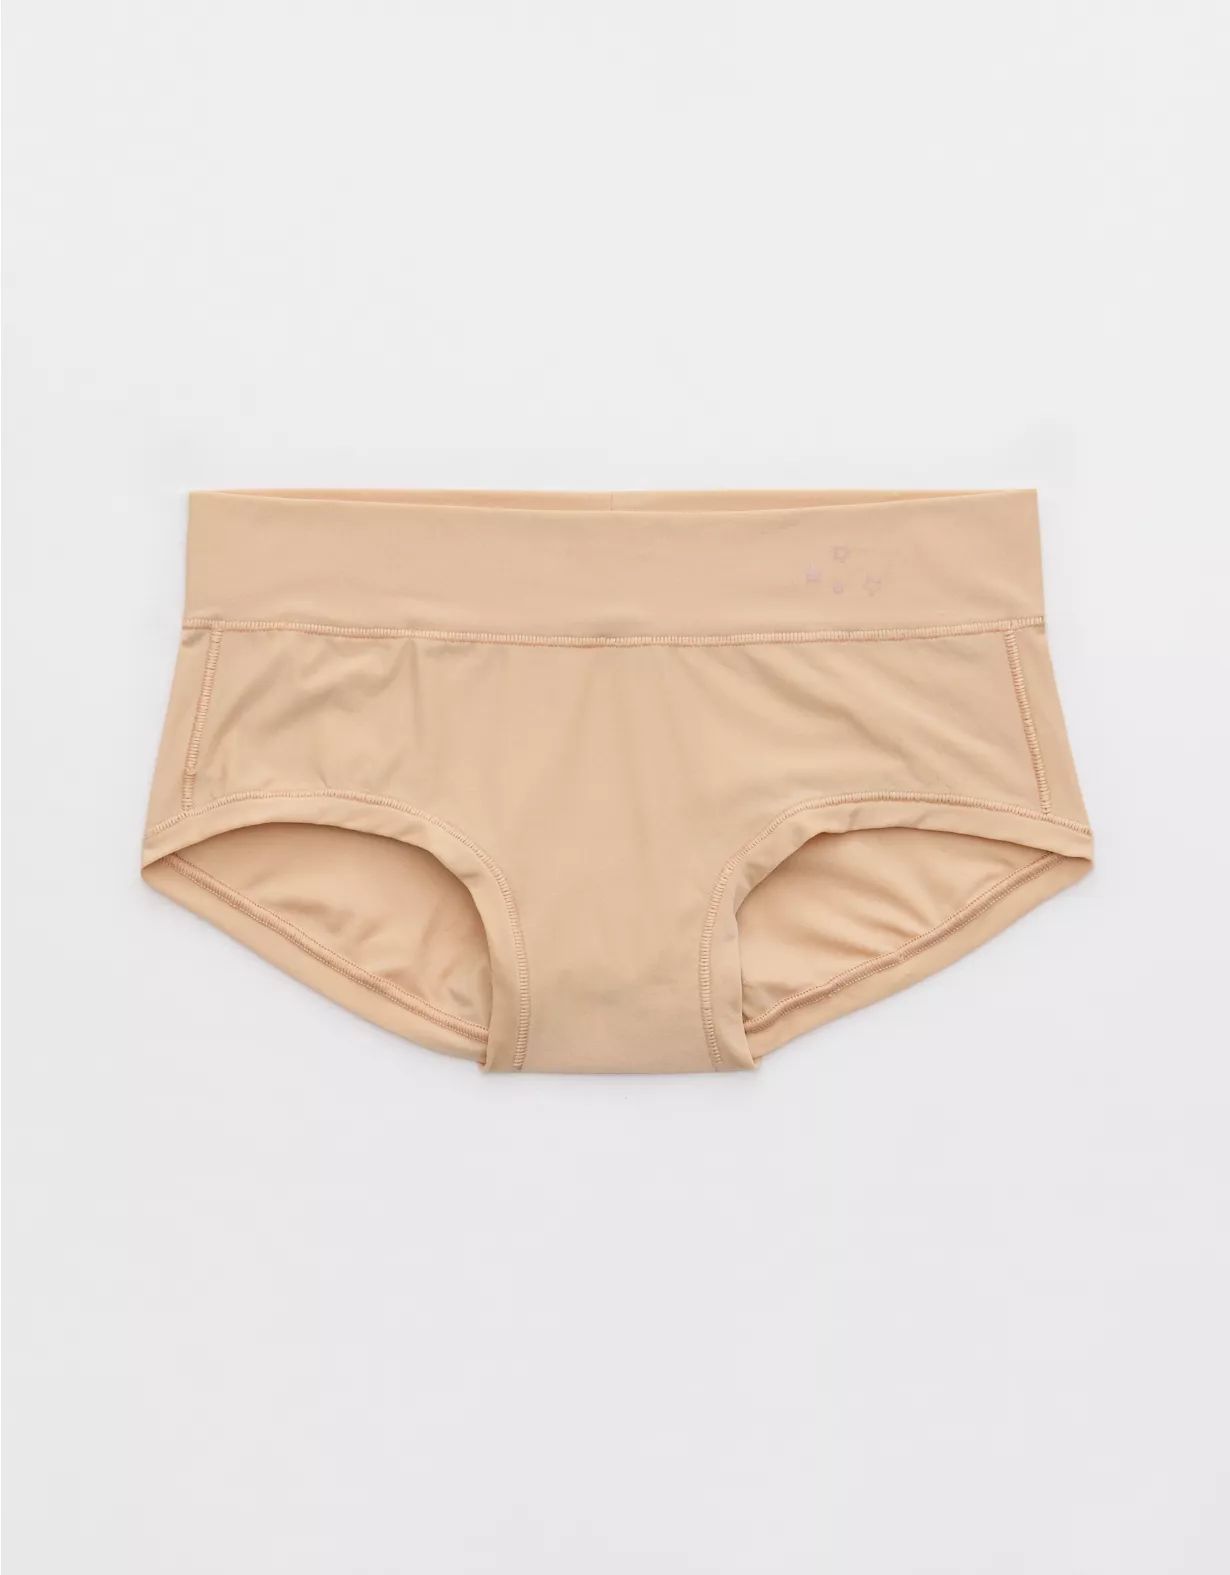 SMOOTHEZ Everyday Boybrief Underwear | Aerie